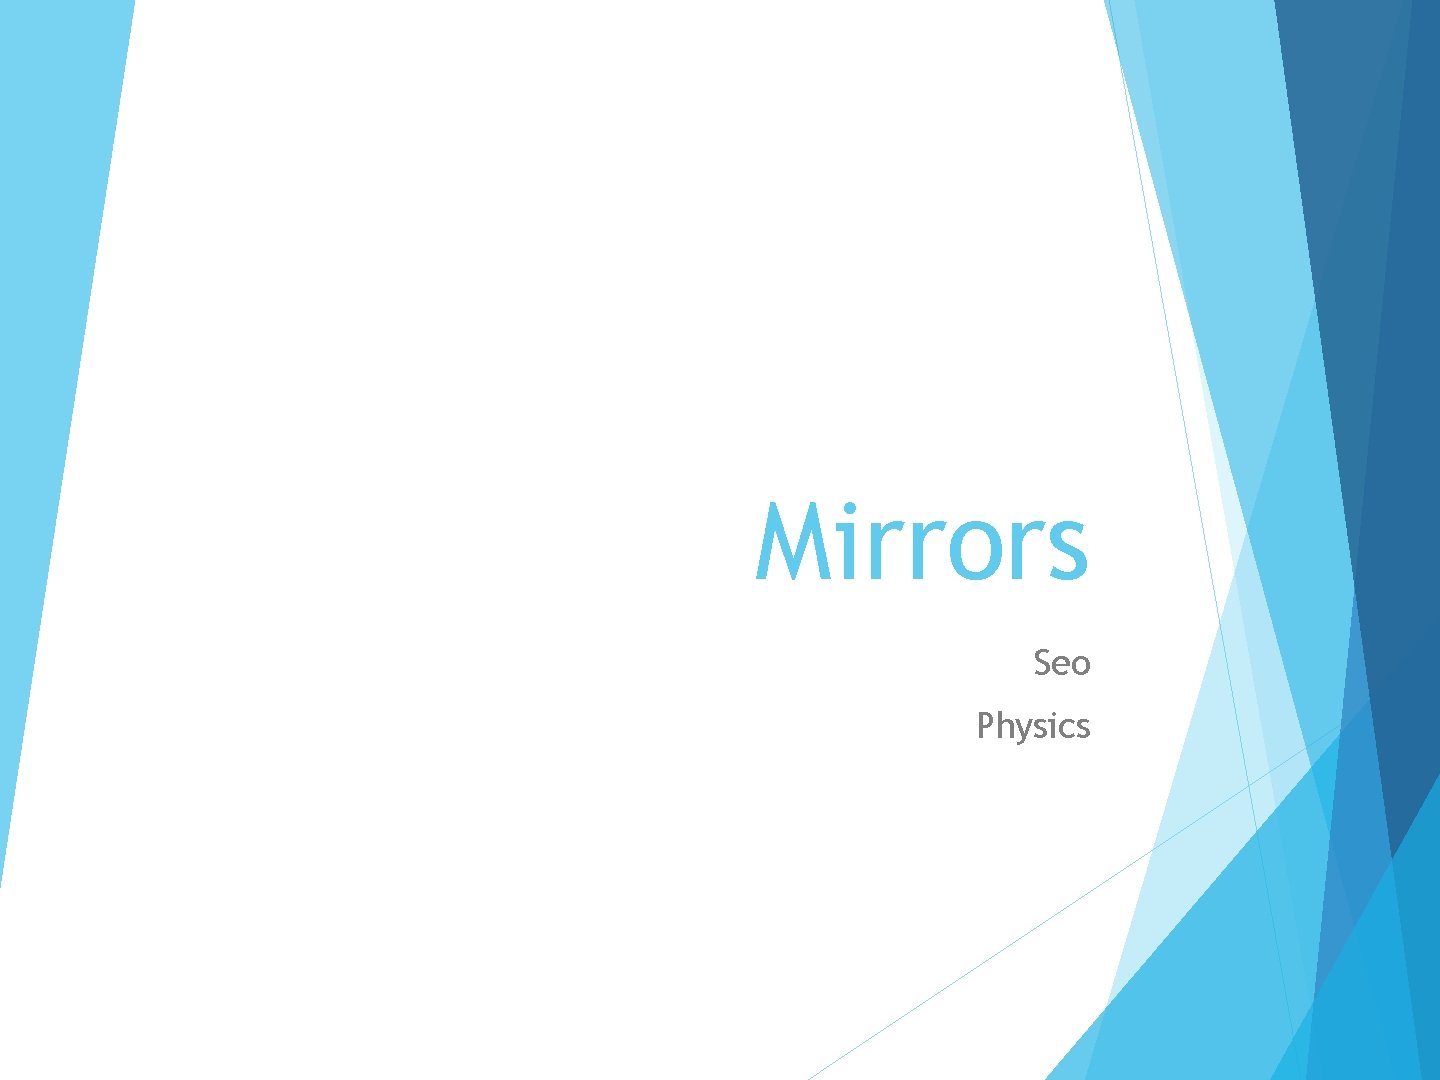 Mirrors Seo Physics 